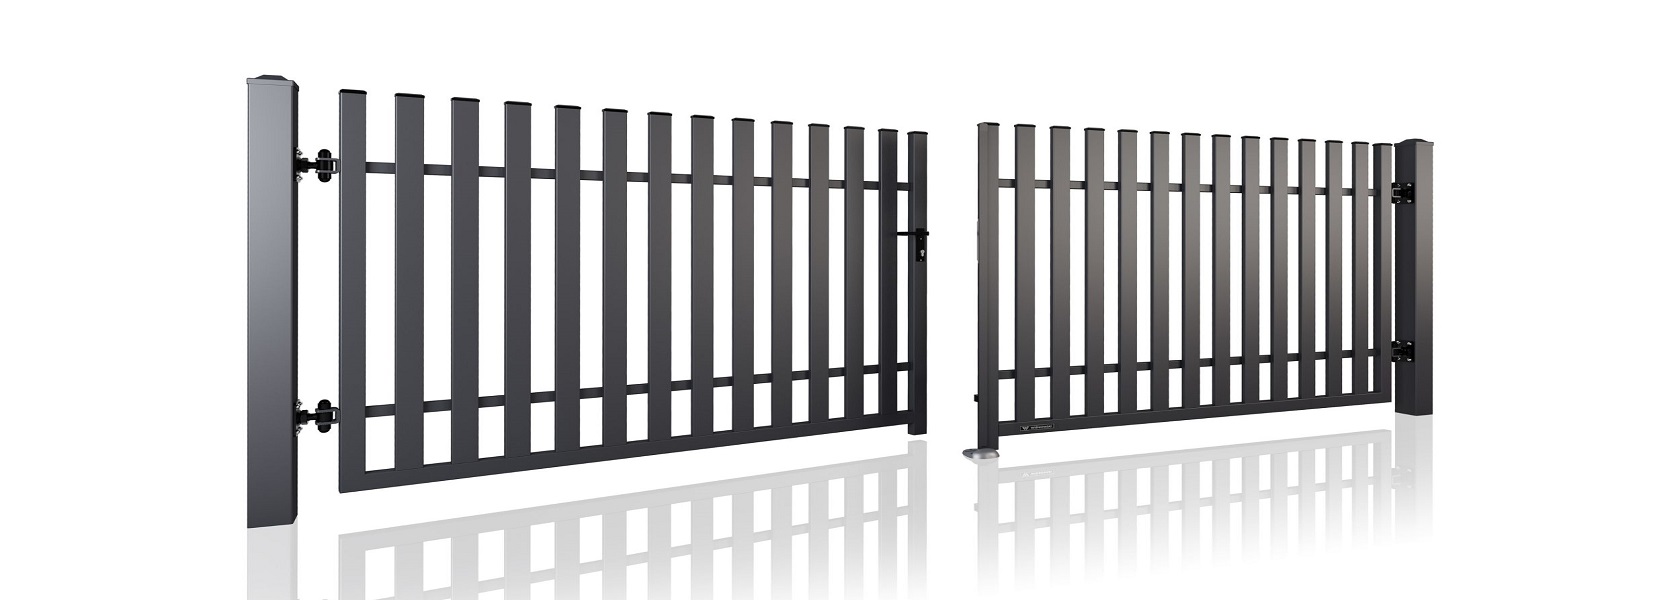 Segmenti e pali di recinzione